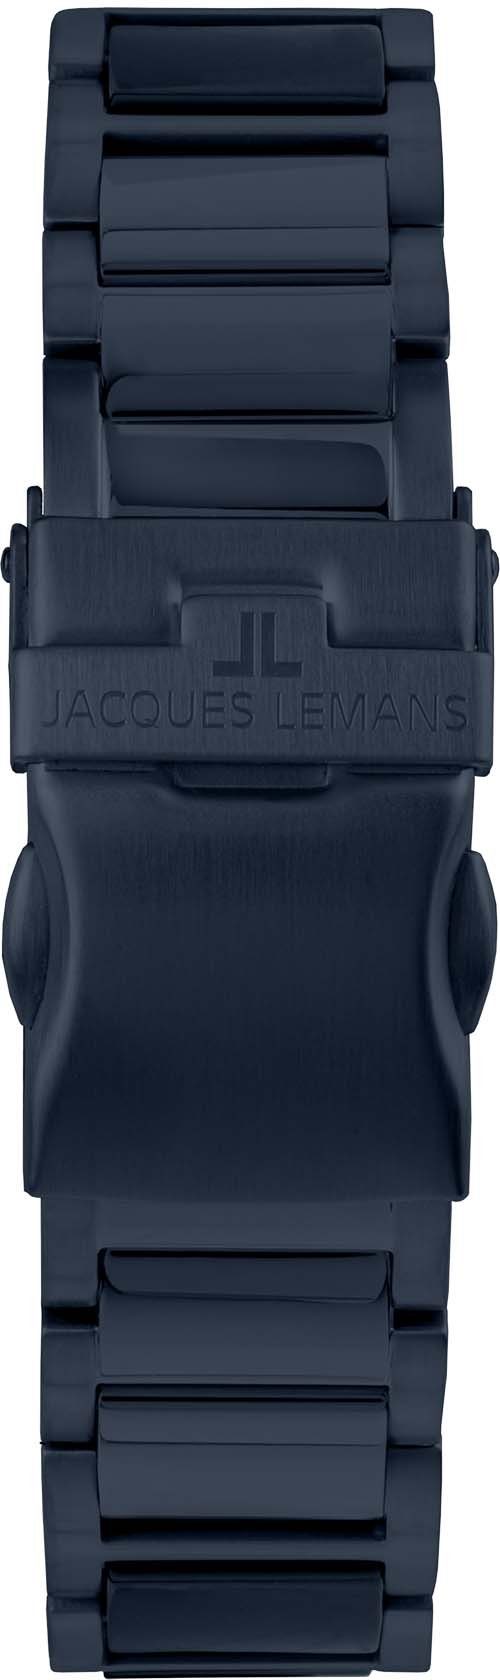 Jacques Lemans Keramikuhr Liverpool, 42-10E